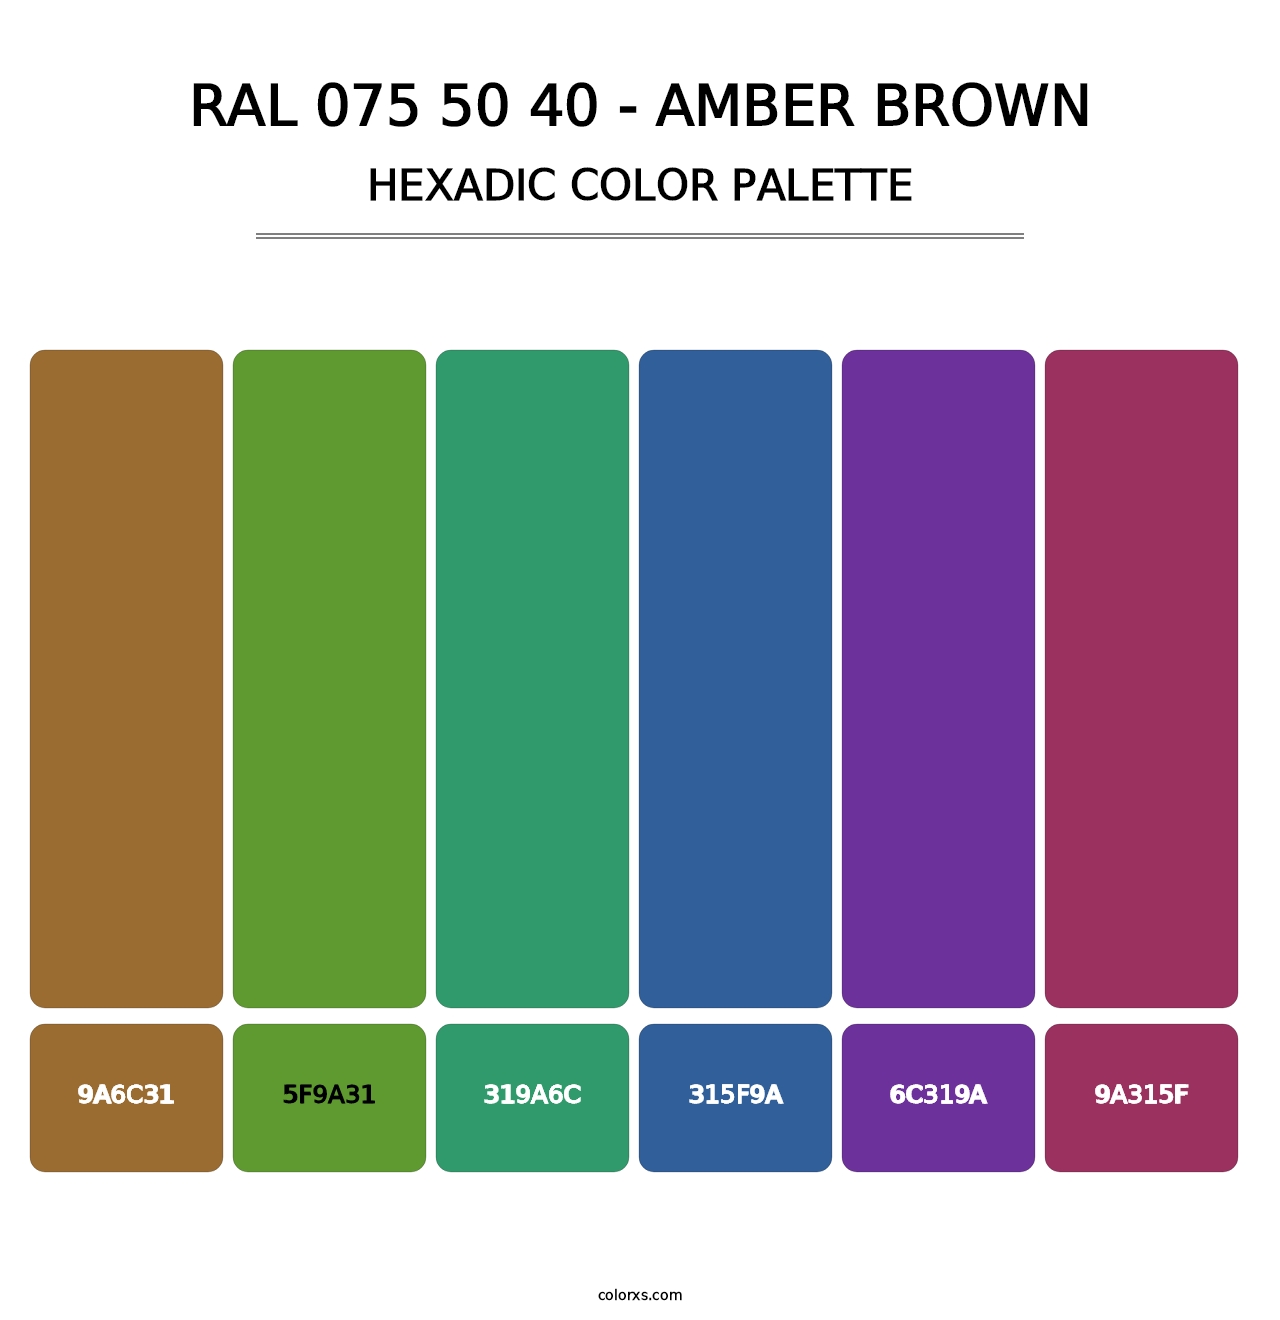 RAL 075 50 40 - Amber Brown - Hexadic Color Palette